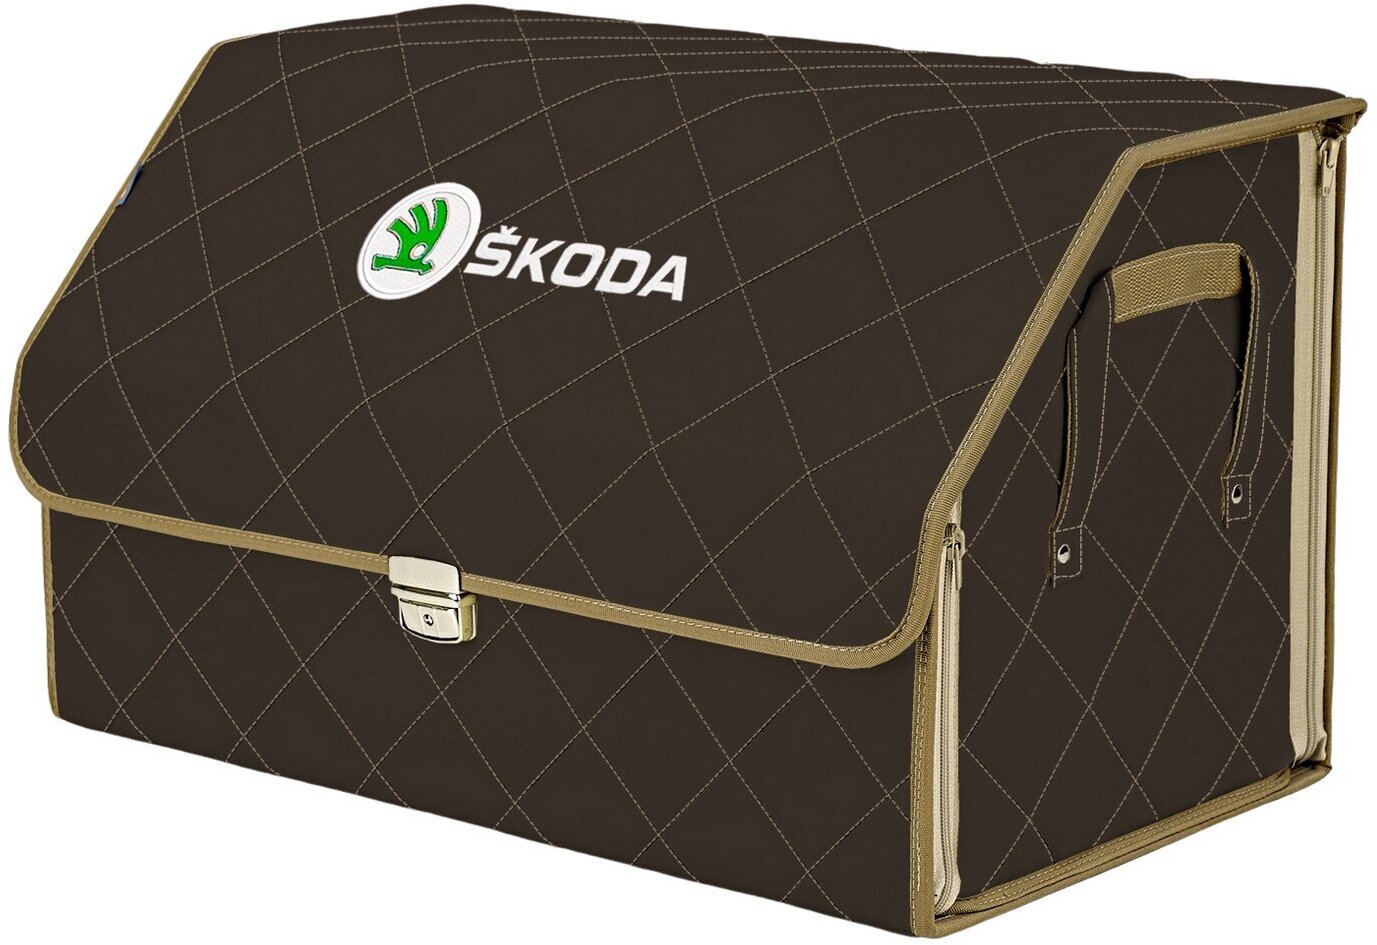 Органайзер-саквояж в багажник "Союз Премиум" (размер XL). Цвет: коричневый с бежевой прострочкой Ромб и вышивкой Skoda (Шкода).